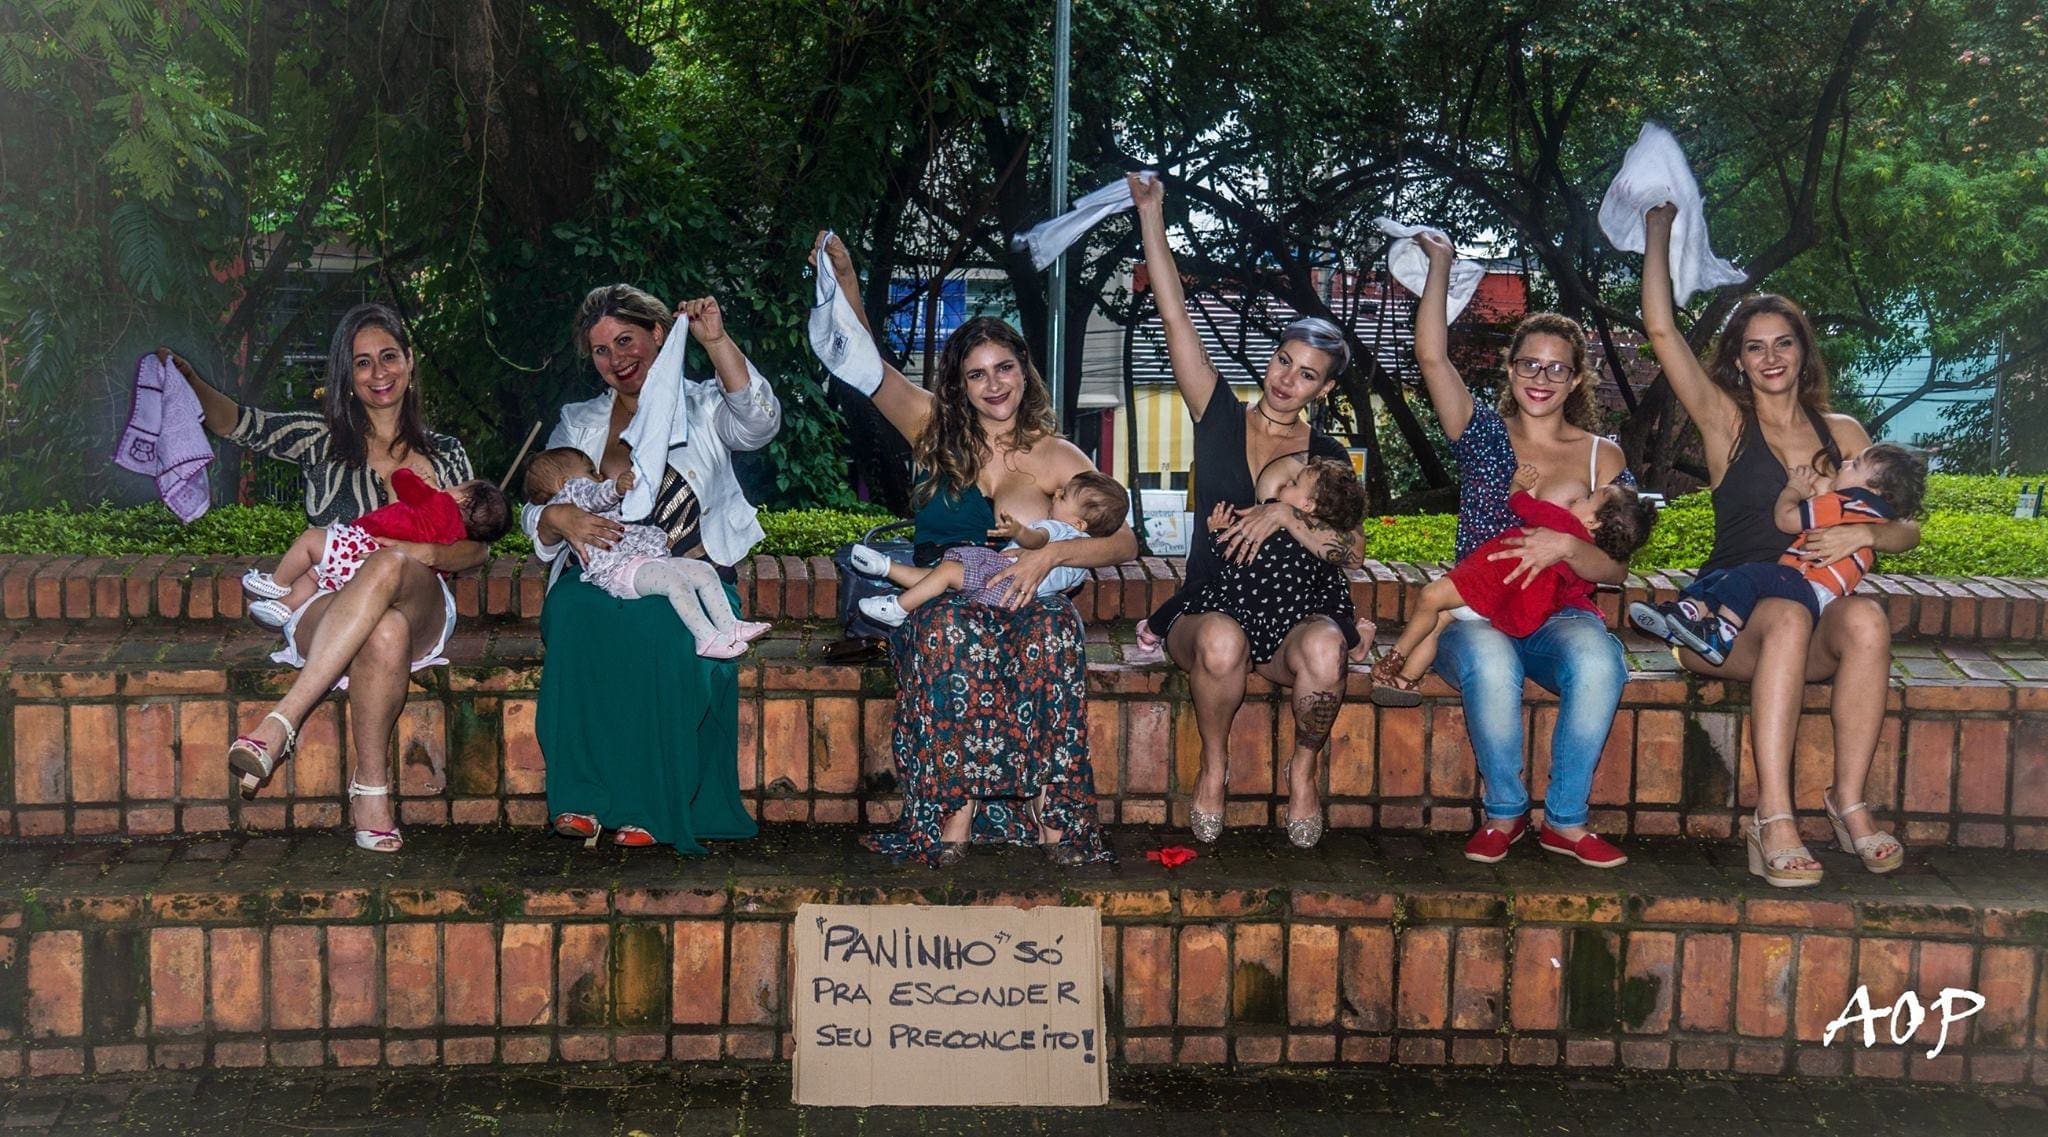 Mães durante ensaio fotográfico em Minas Gerais (Foto: Alexandre Périgo)